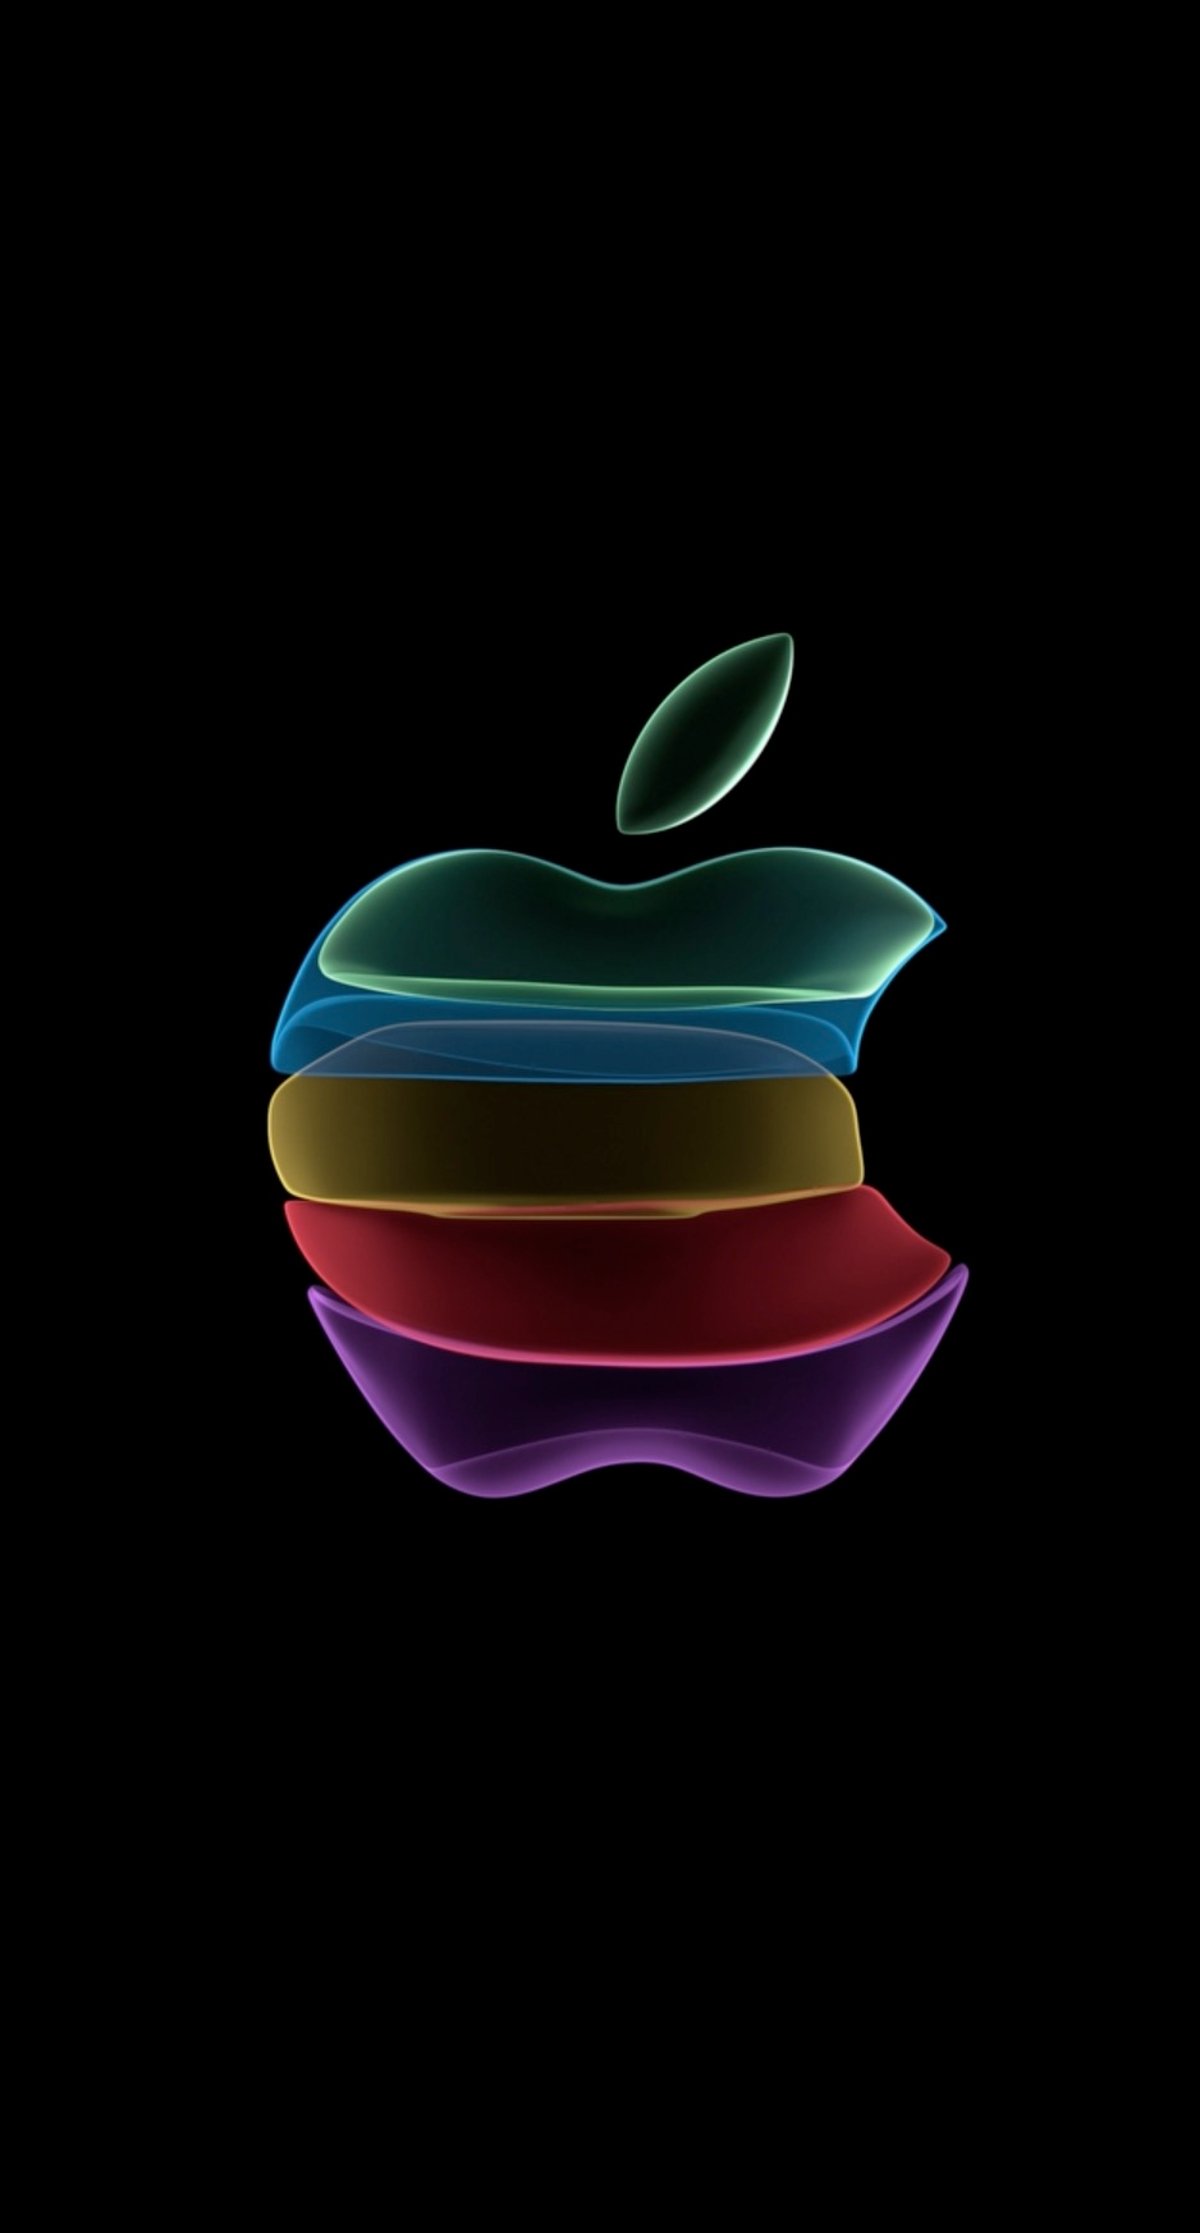 El wallpaper animado con la manzana que todo amante de Apple debería tener